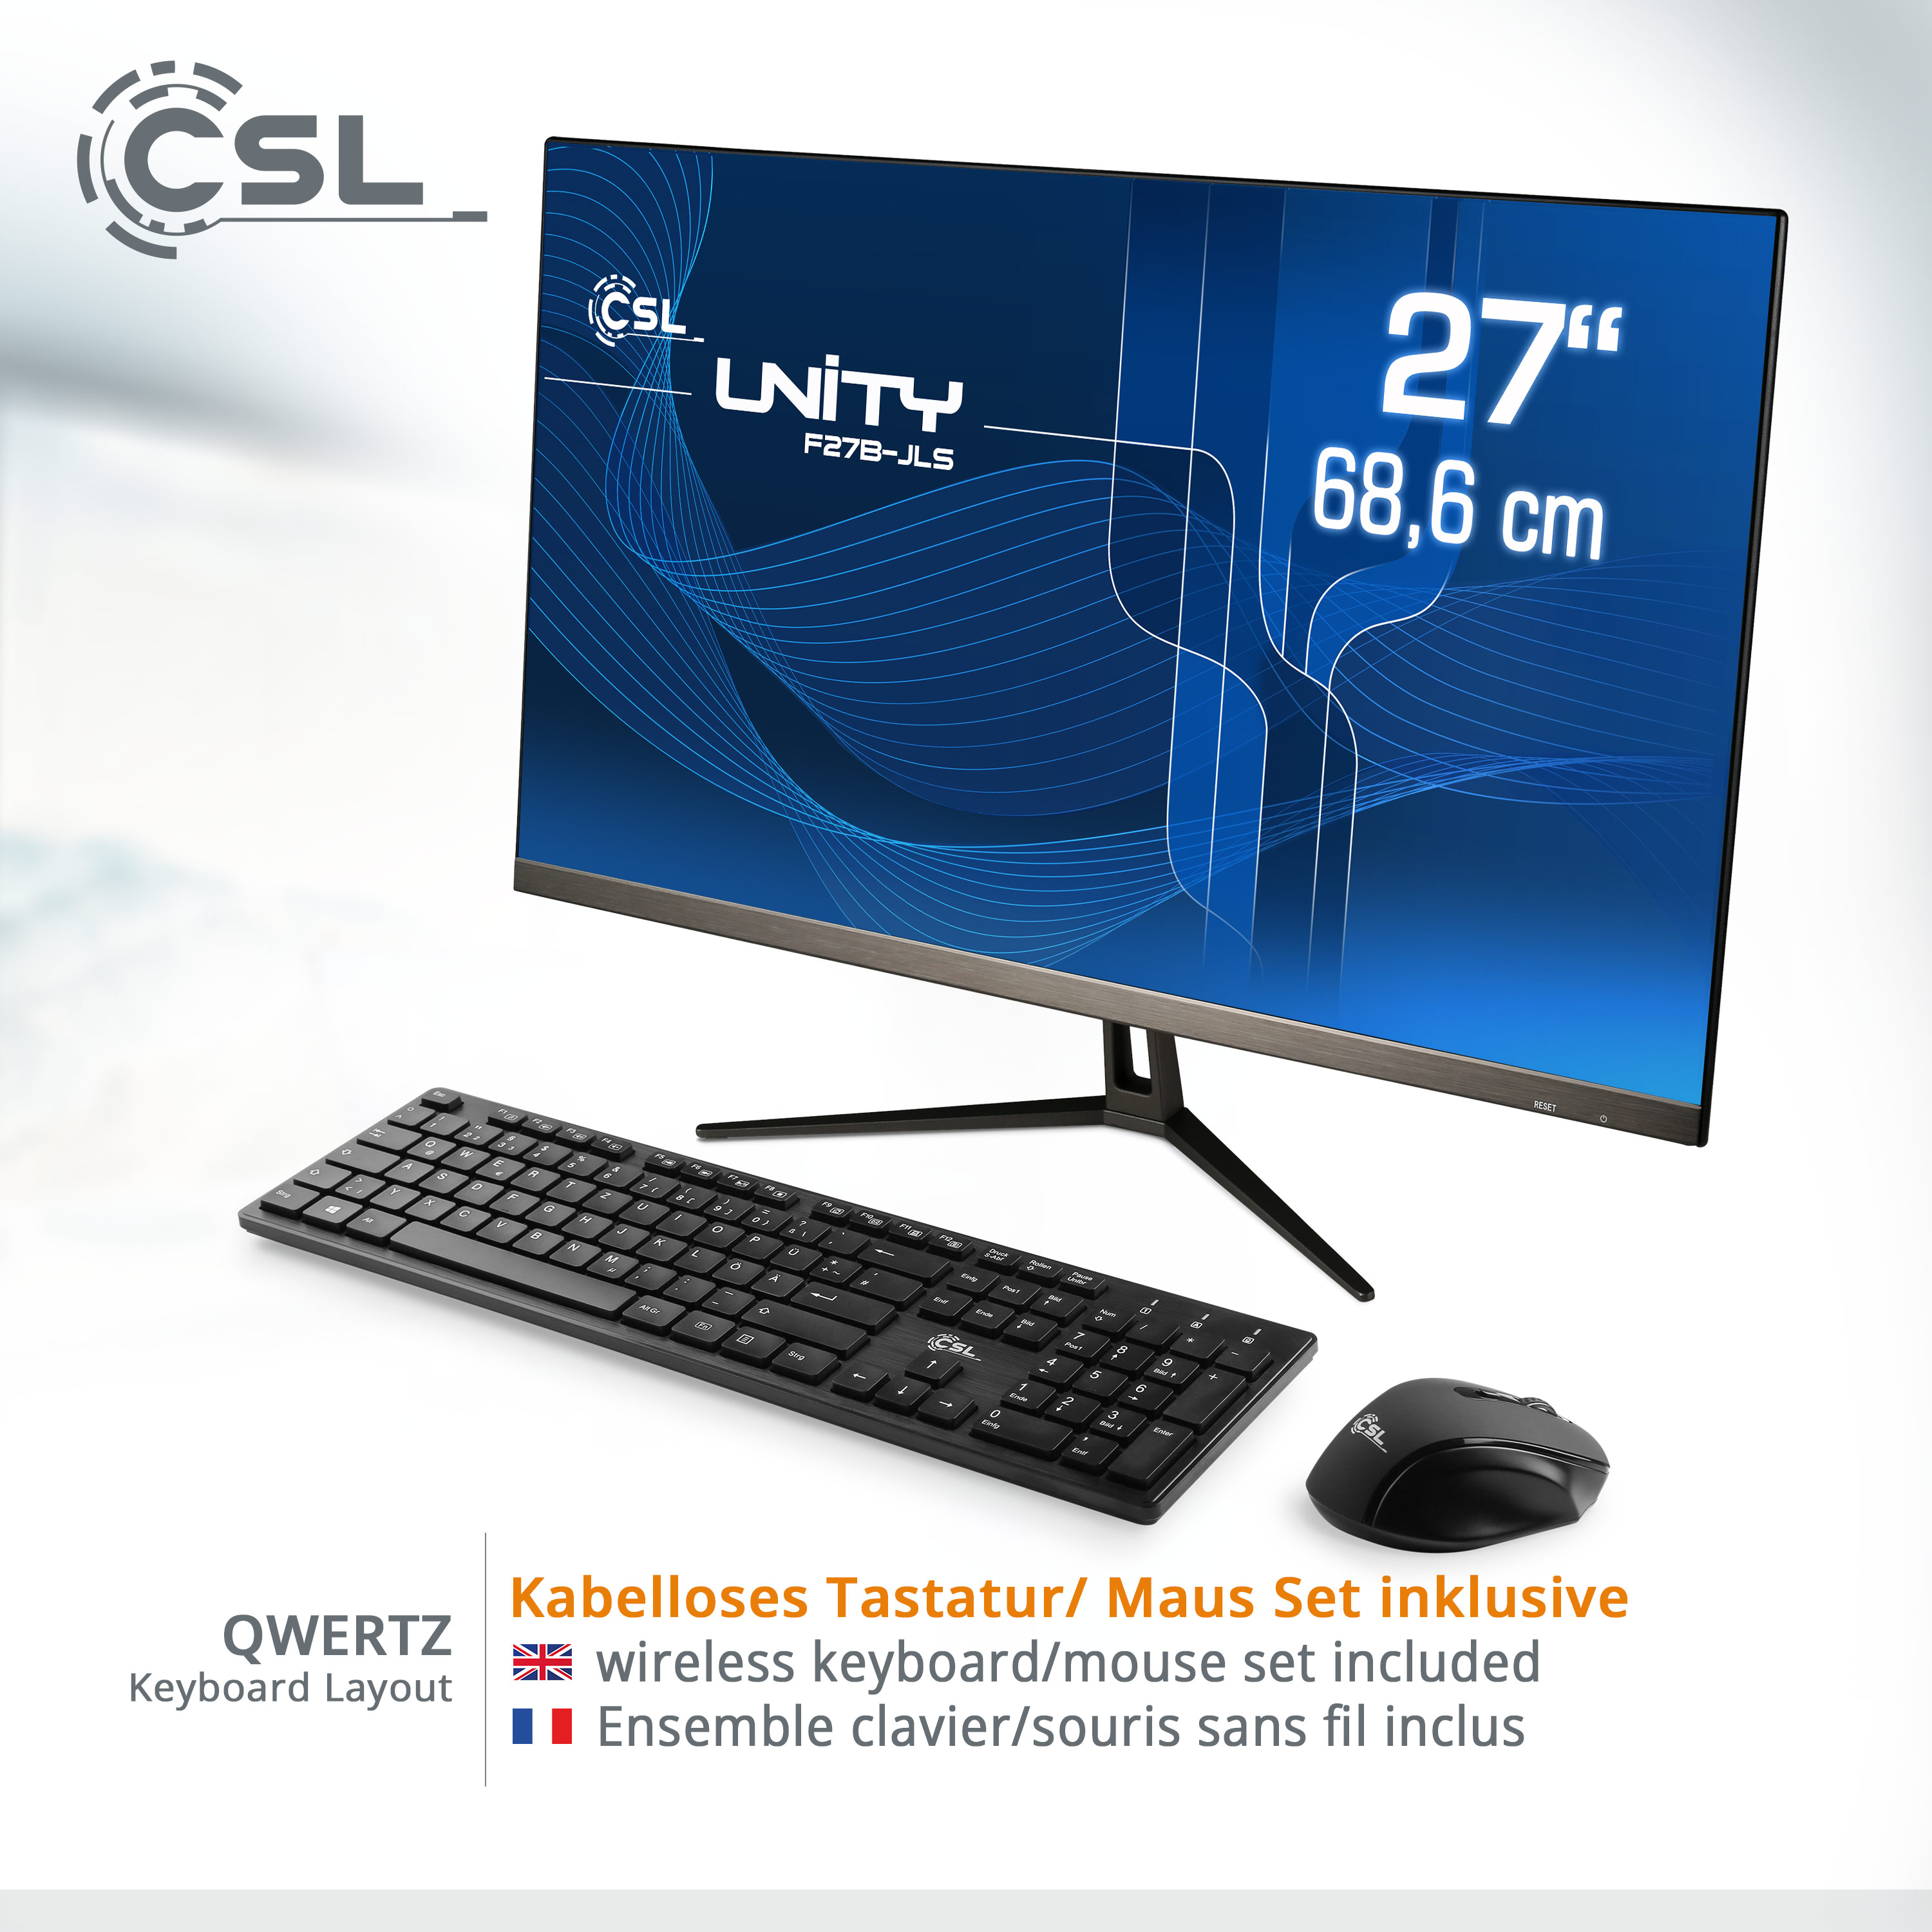 CSL Unity All-in-One-PC 256 256 32 Home, 32 Pentium 11 Graphics, GB schwarz RAM / RAM, / 27 GB UHD GB GB SSD, Intel® mit Win F27B-JLS Display, / Zoll